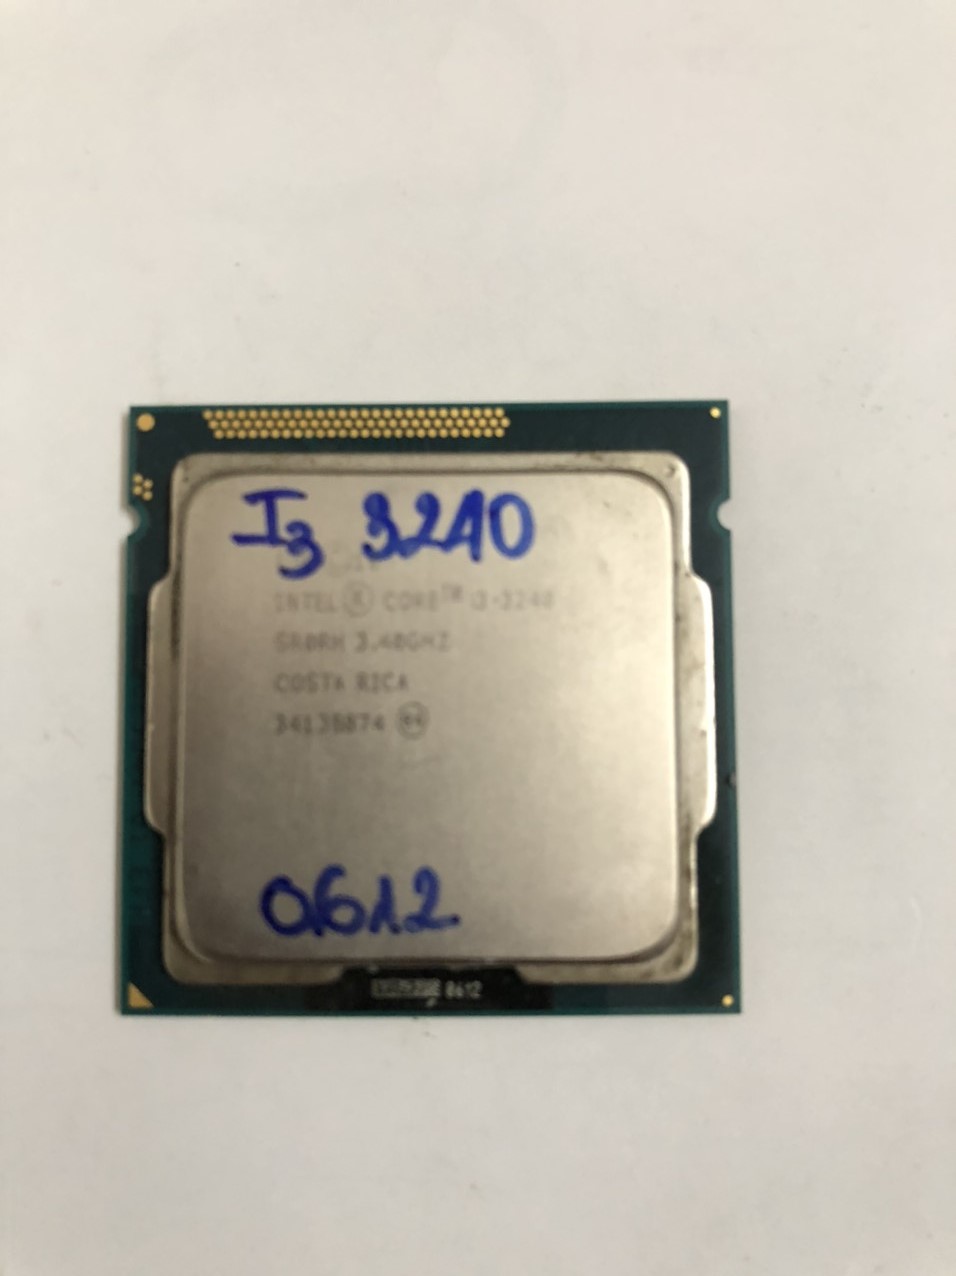 CPU- BỘ VI XỬ LÝ I3-3240 SK 1155 HÀNG ĐẸP